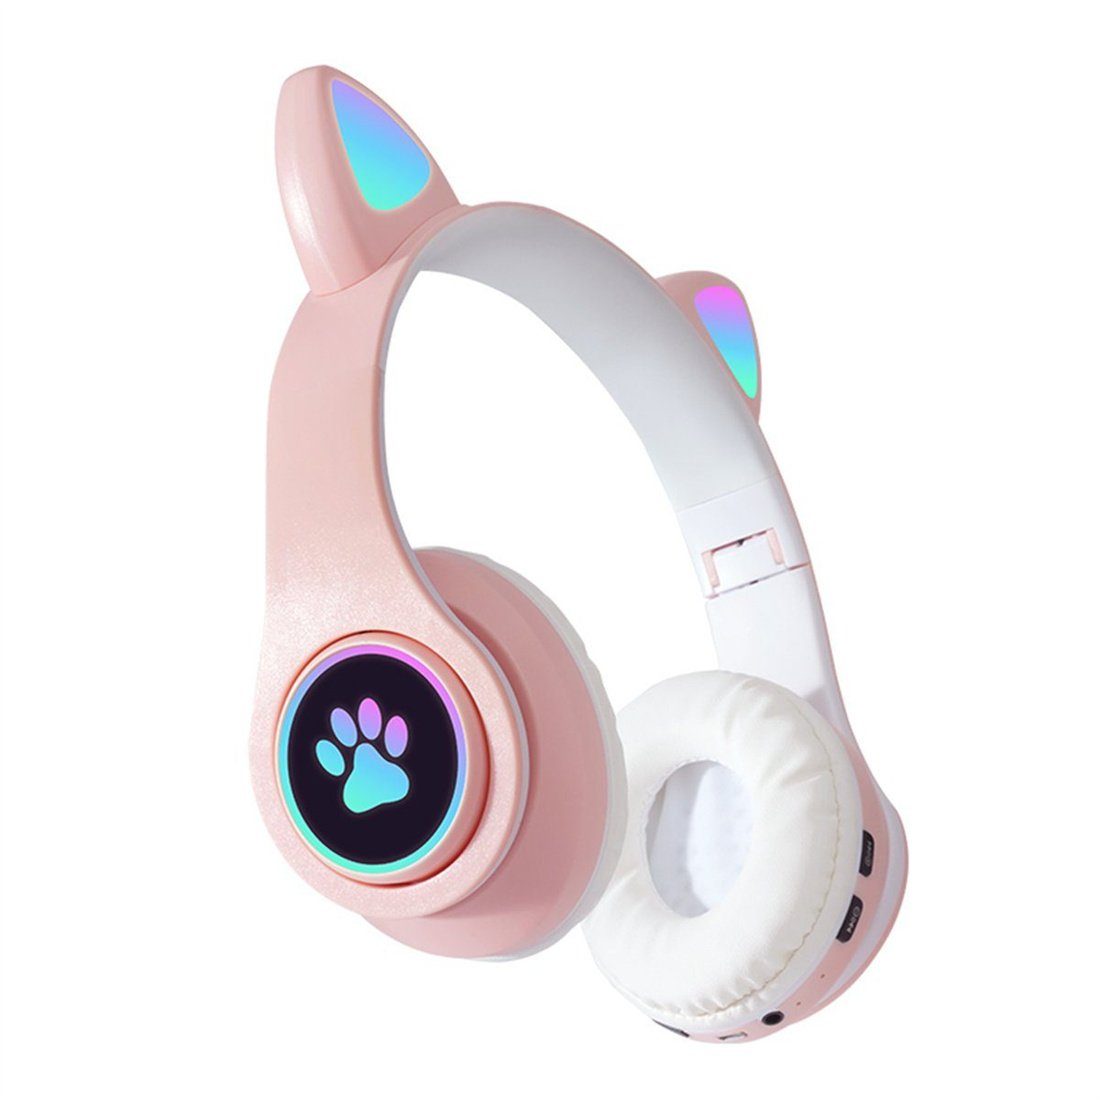 Rosa Headset für Mädchen, DAYUT Bluetooth-Kopfhörer Gaming-Headset,